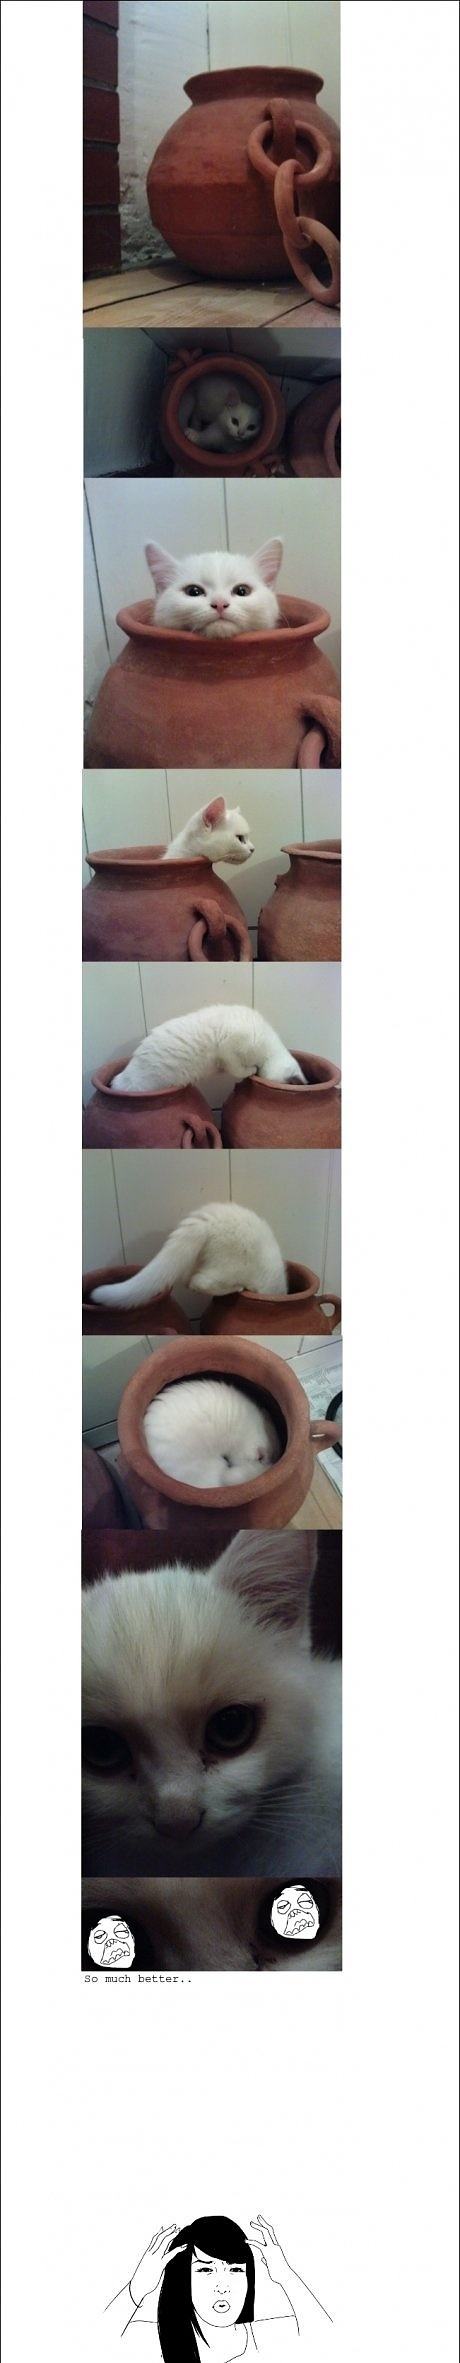 Obrázek Cats Logic 02-04-2012